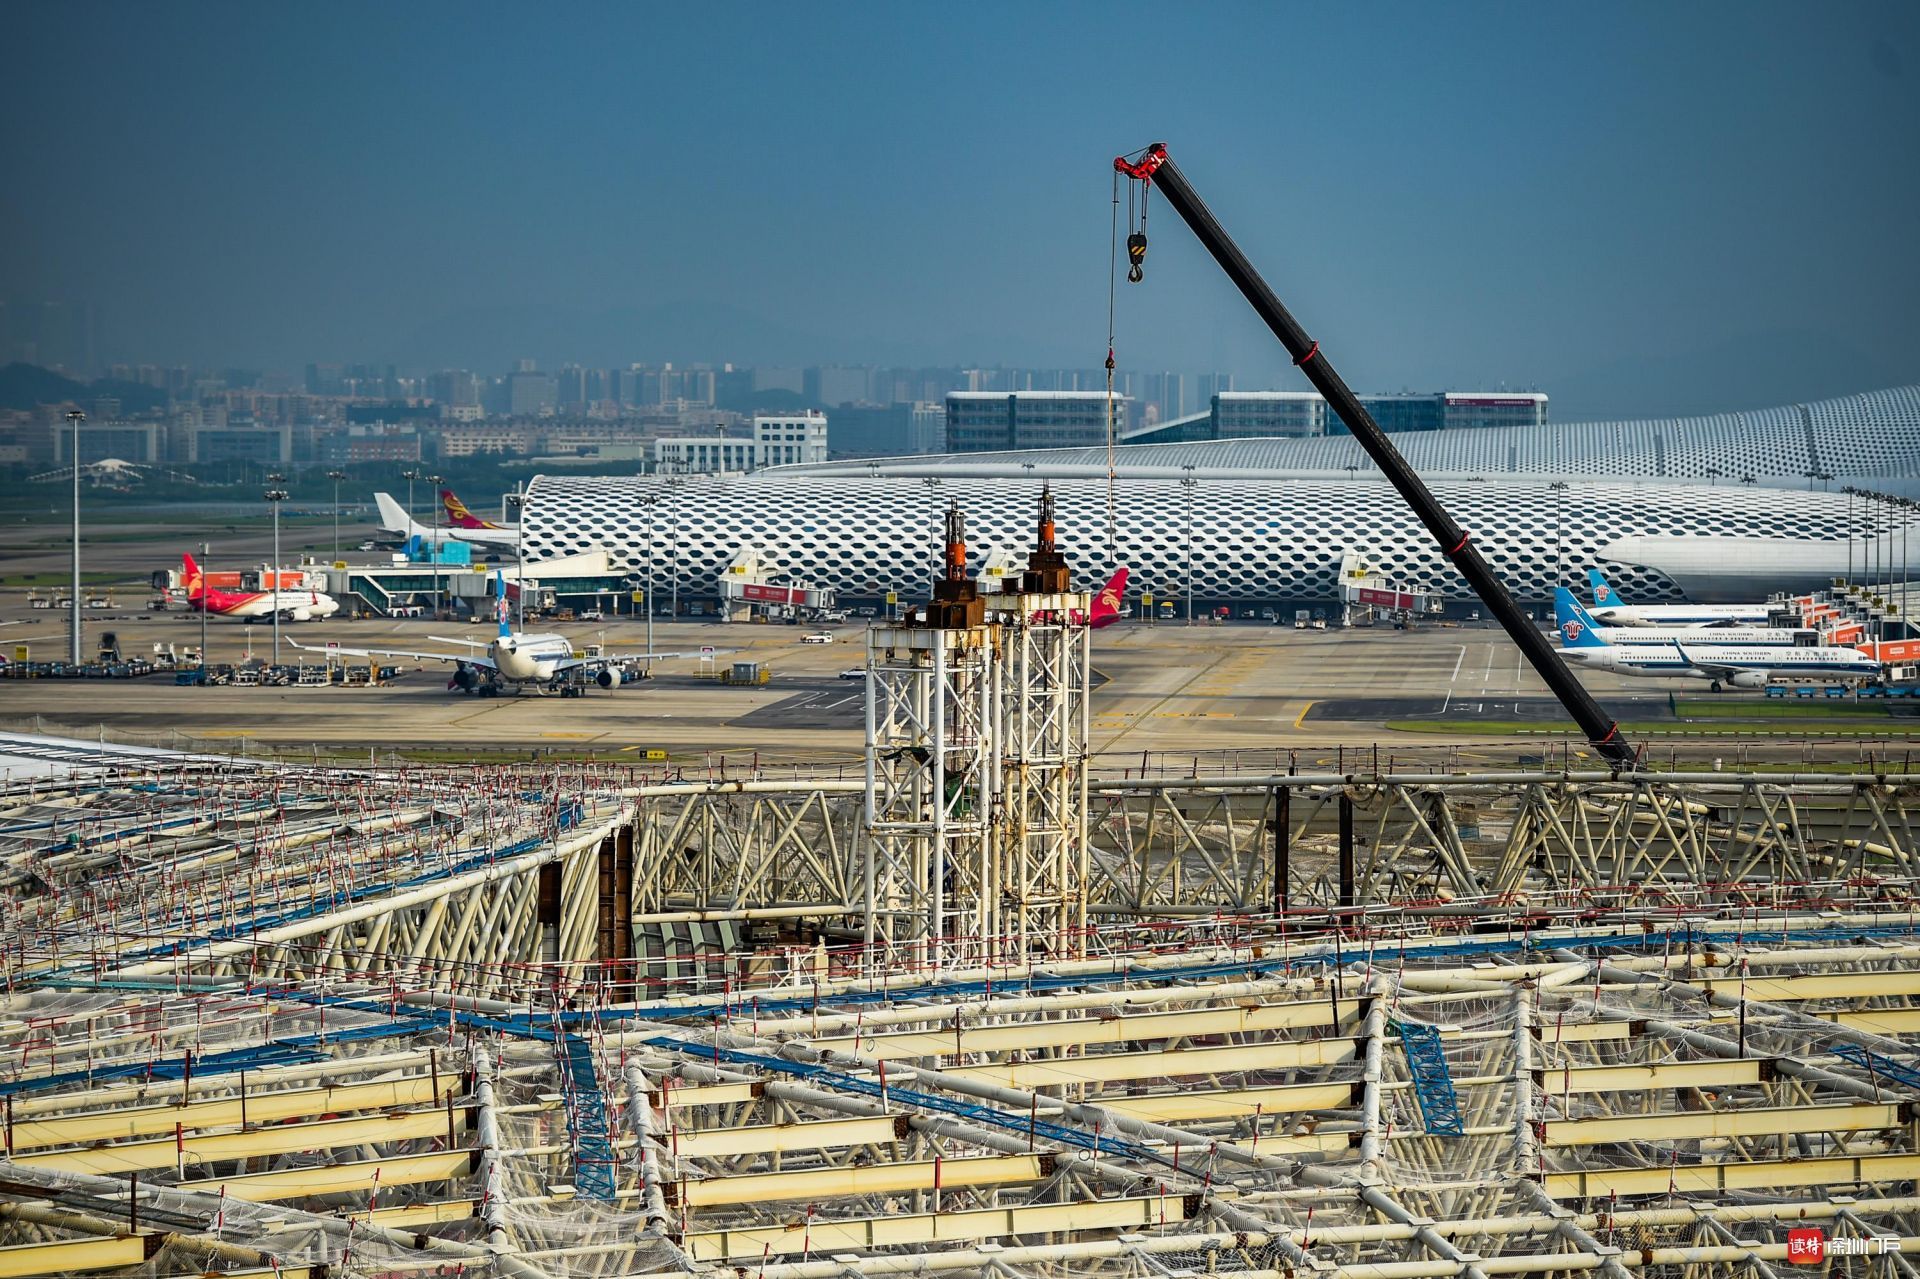 深圳宝安国际机机场卫星厅主体结构全面封顶 预计2021年建成运营